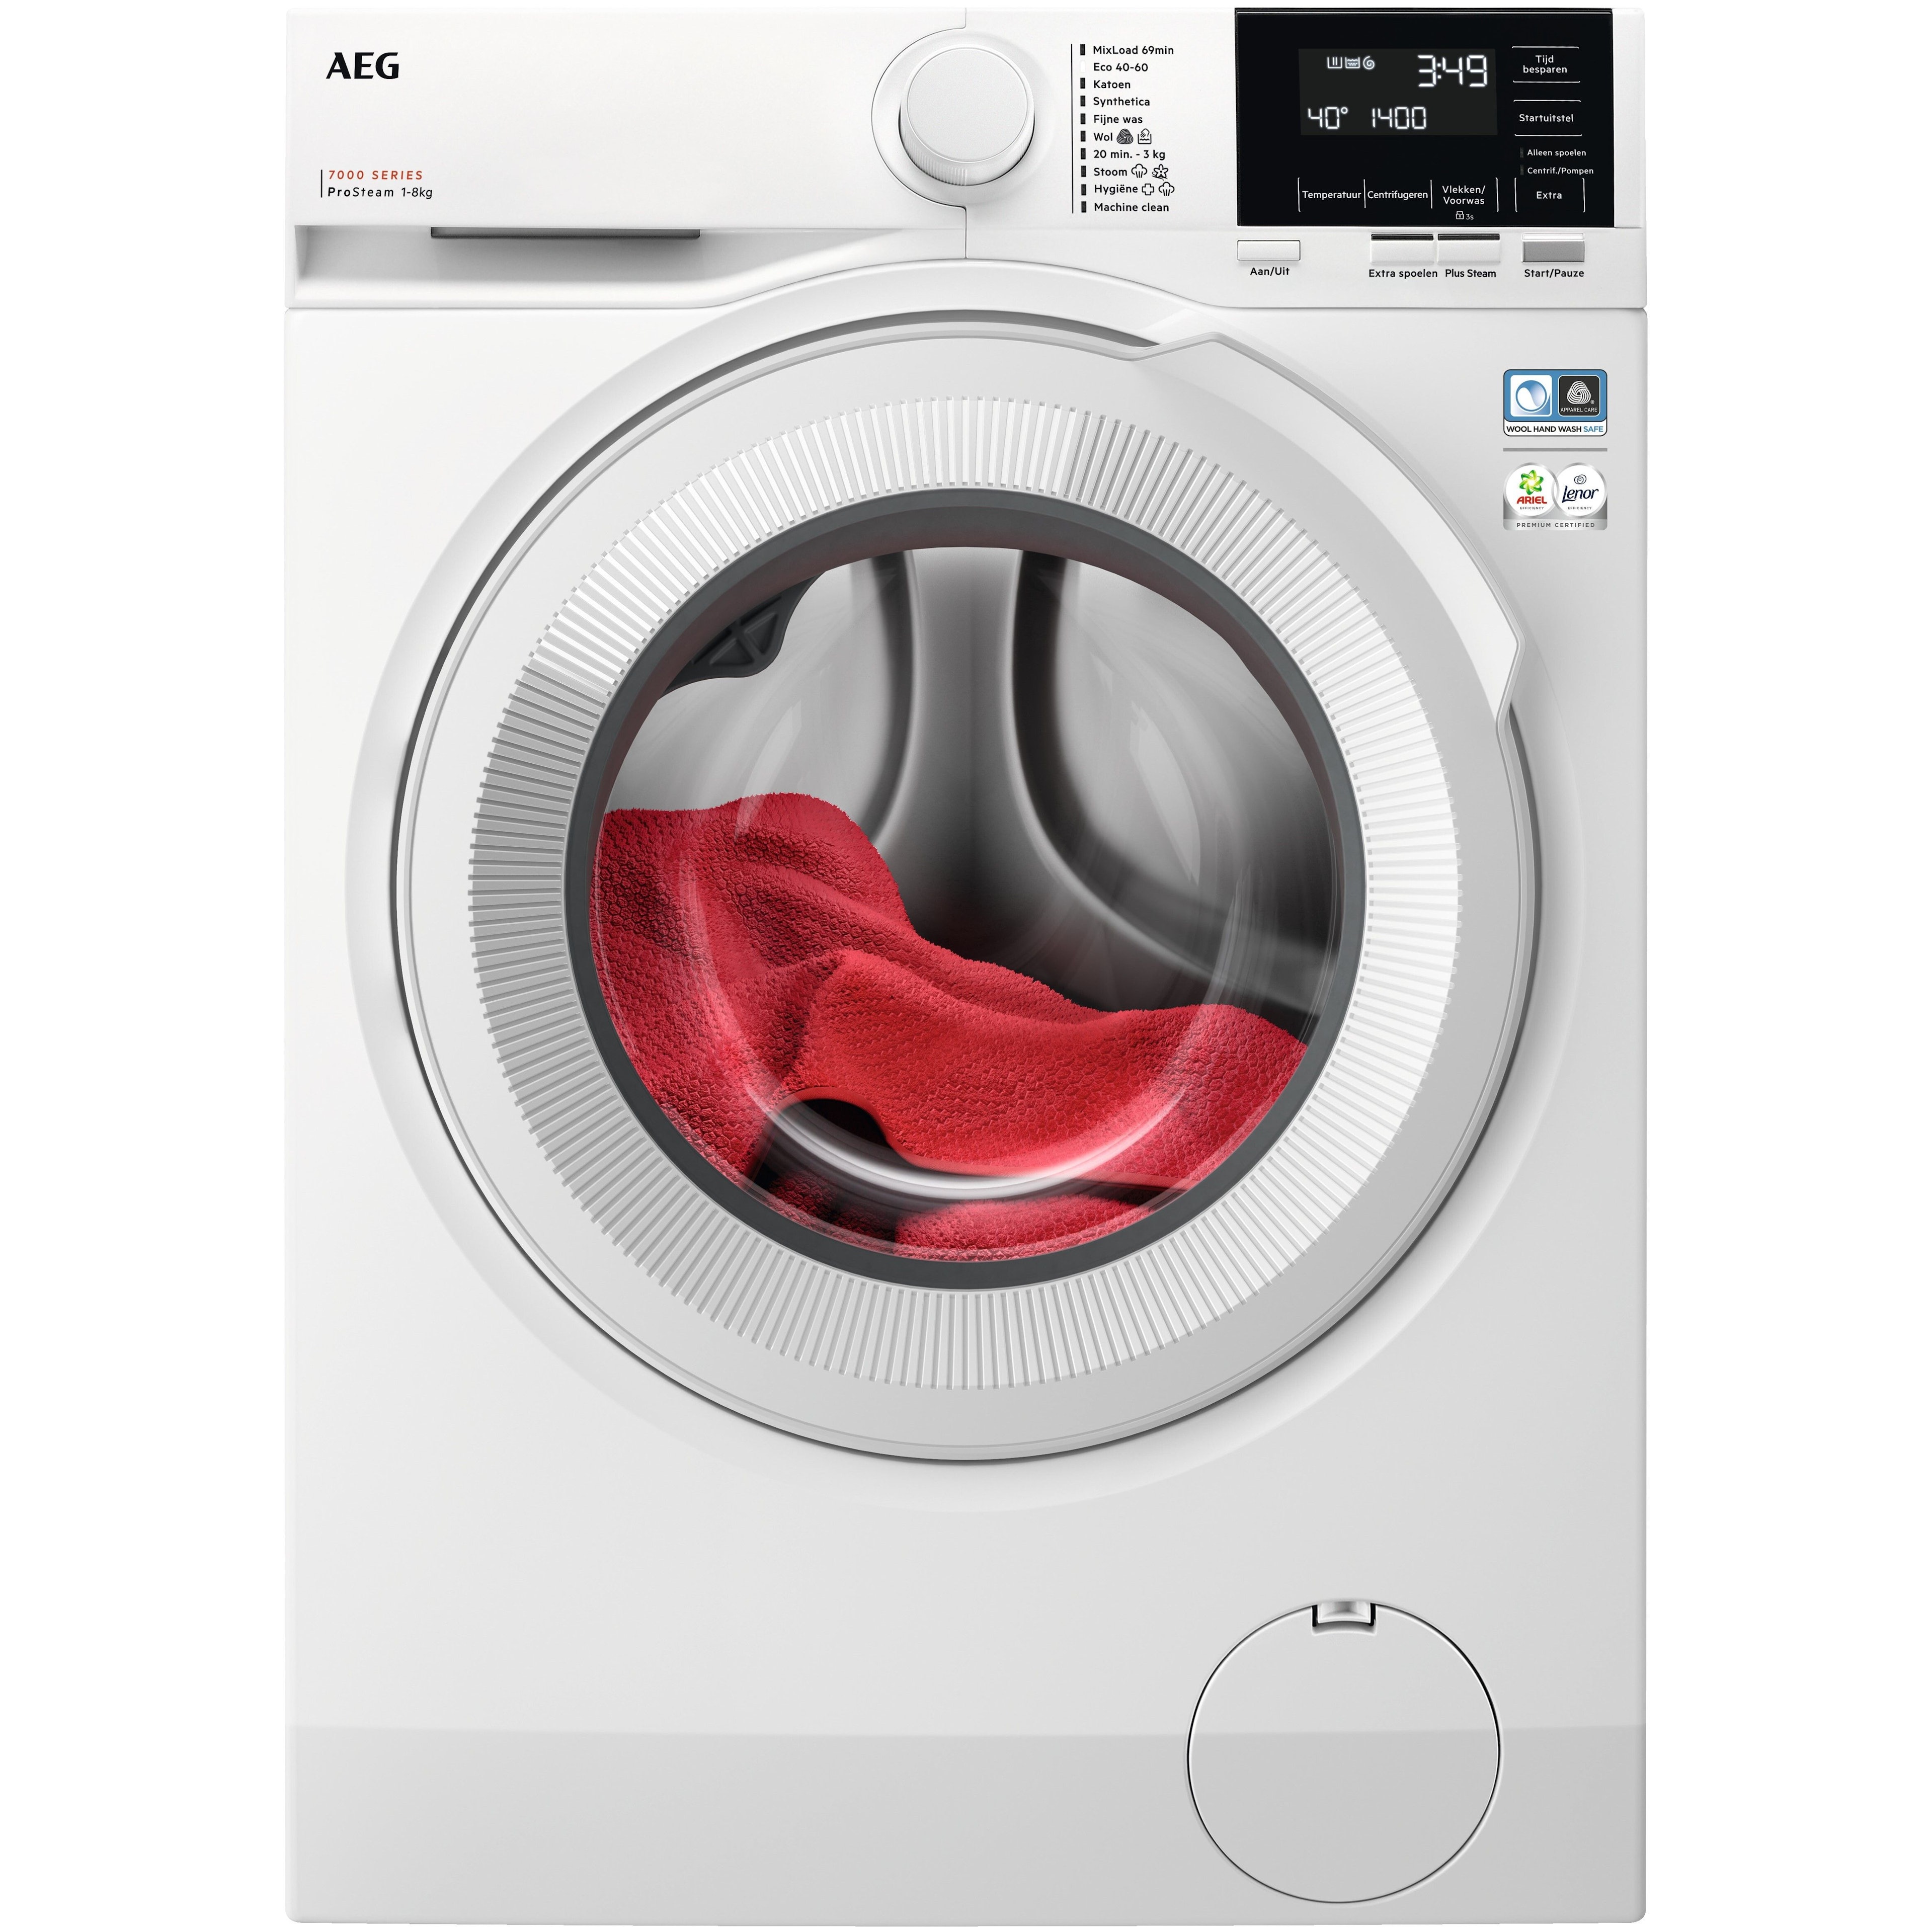 AEG LR73842 wasmachine afbeelding 1